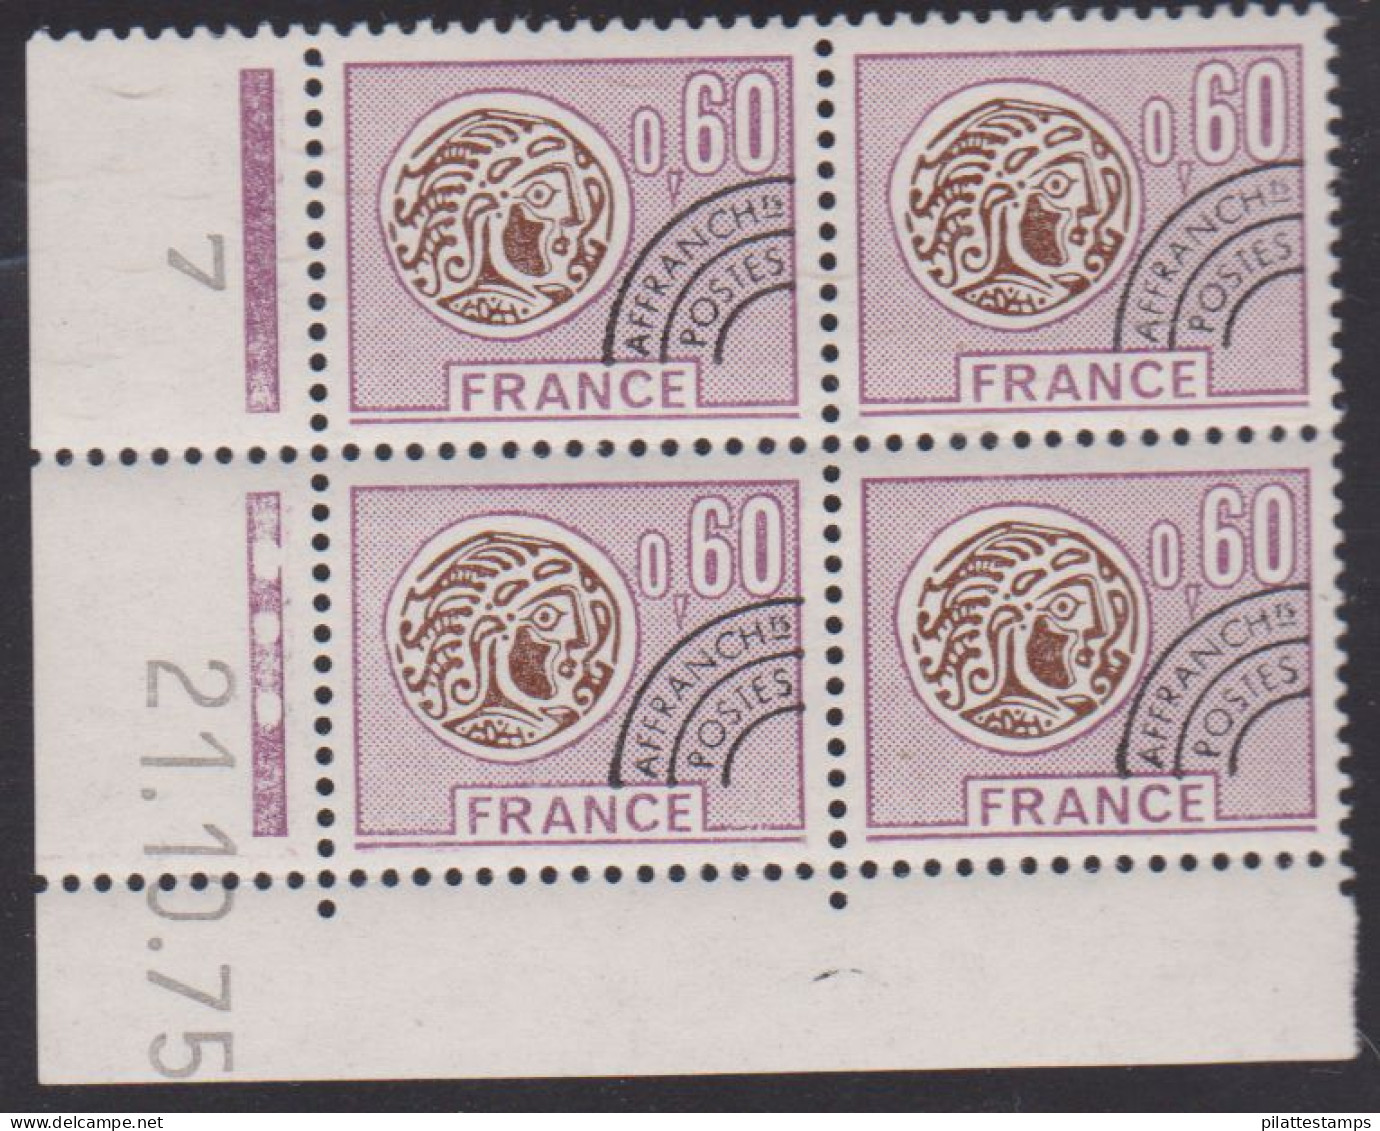 FRANCE PREOBLITERE N° 140** MONNAIE GAULOISE COIN DATE DU 21/10/75 - Préoblitérés